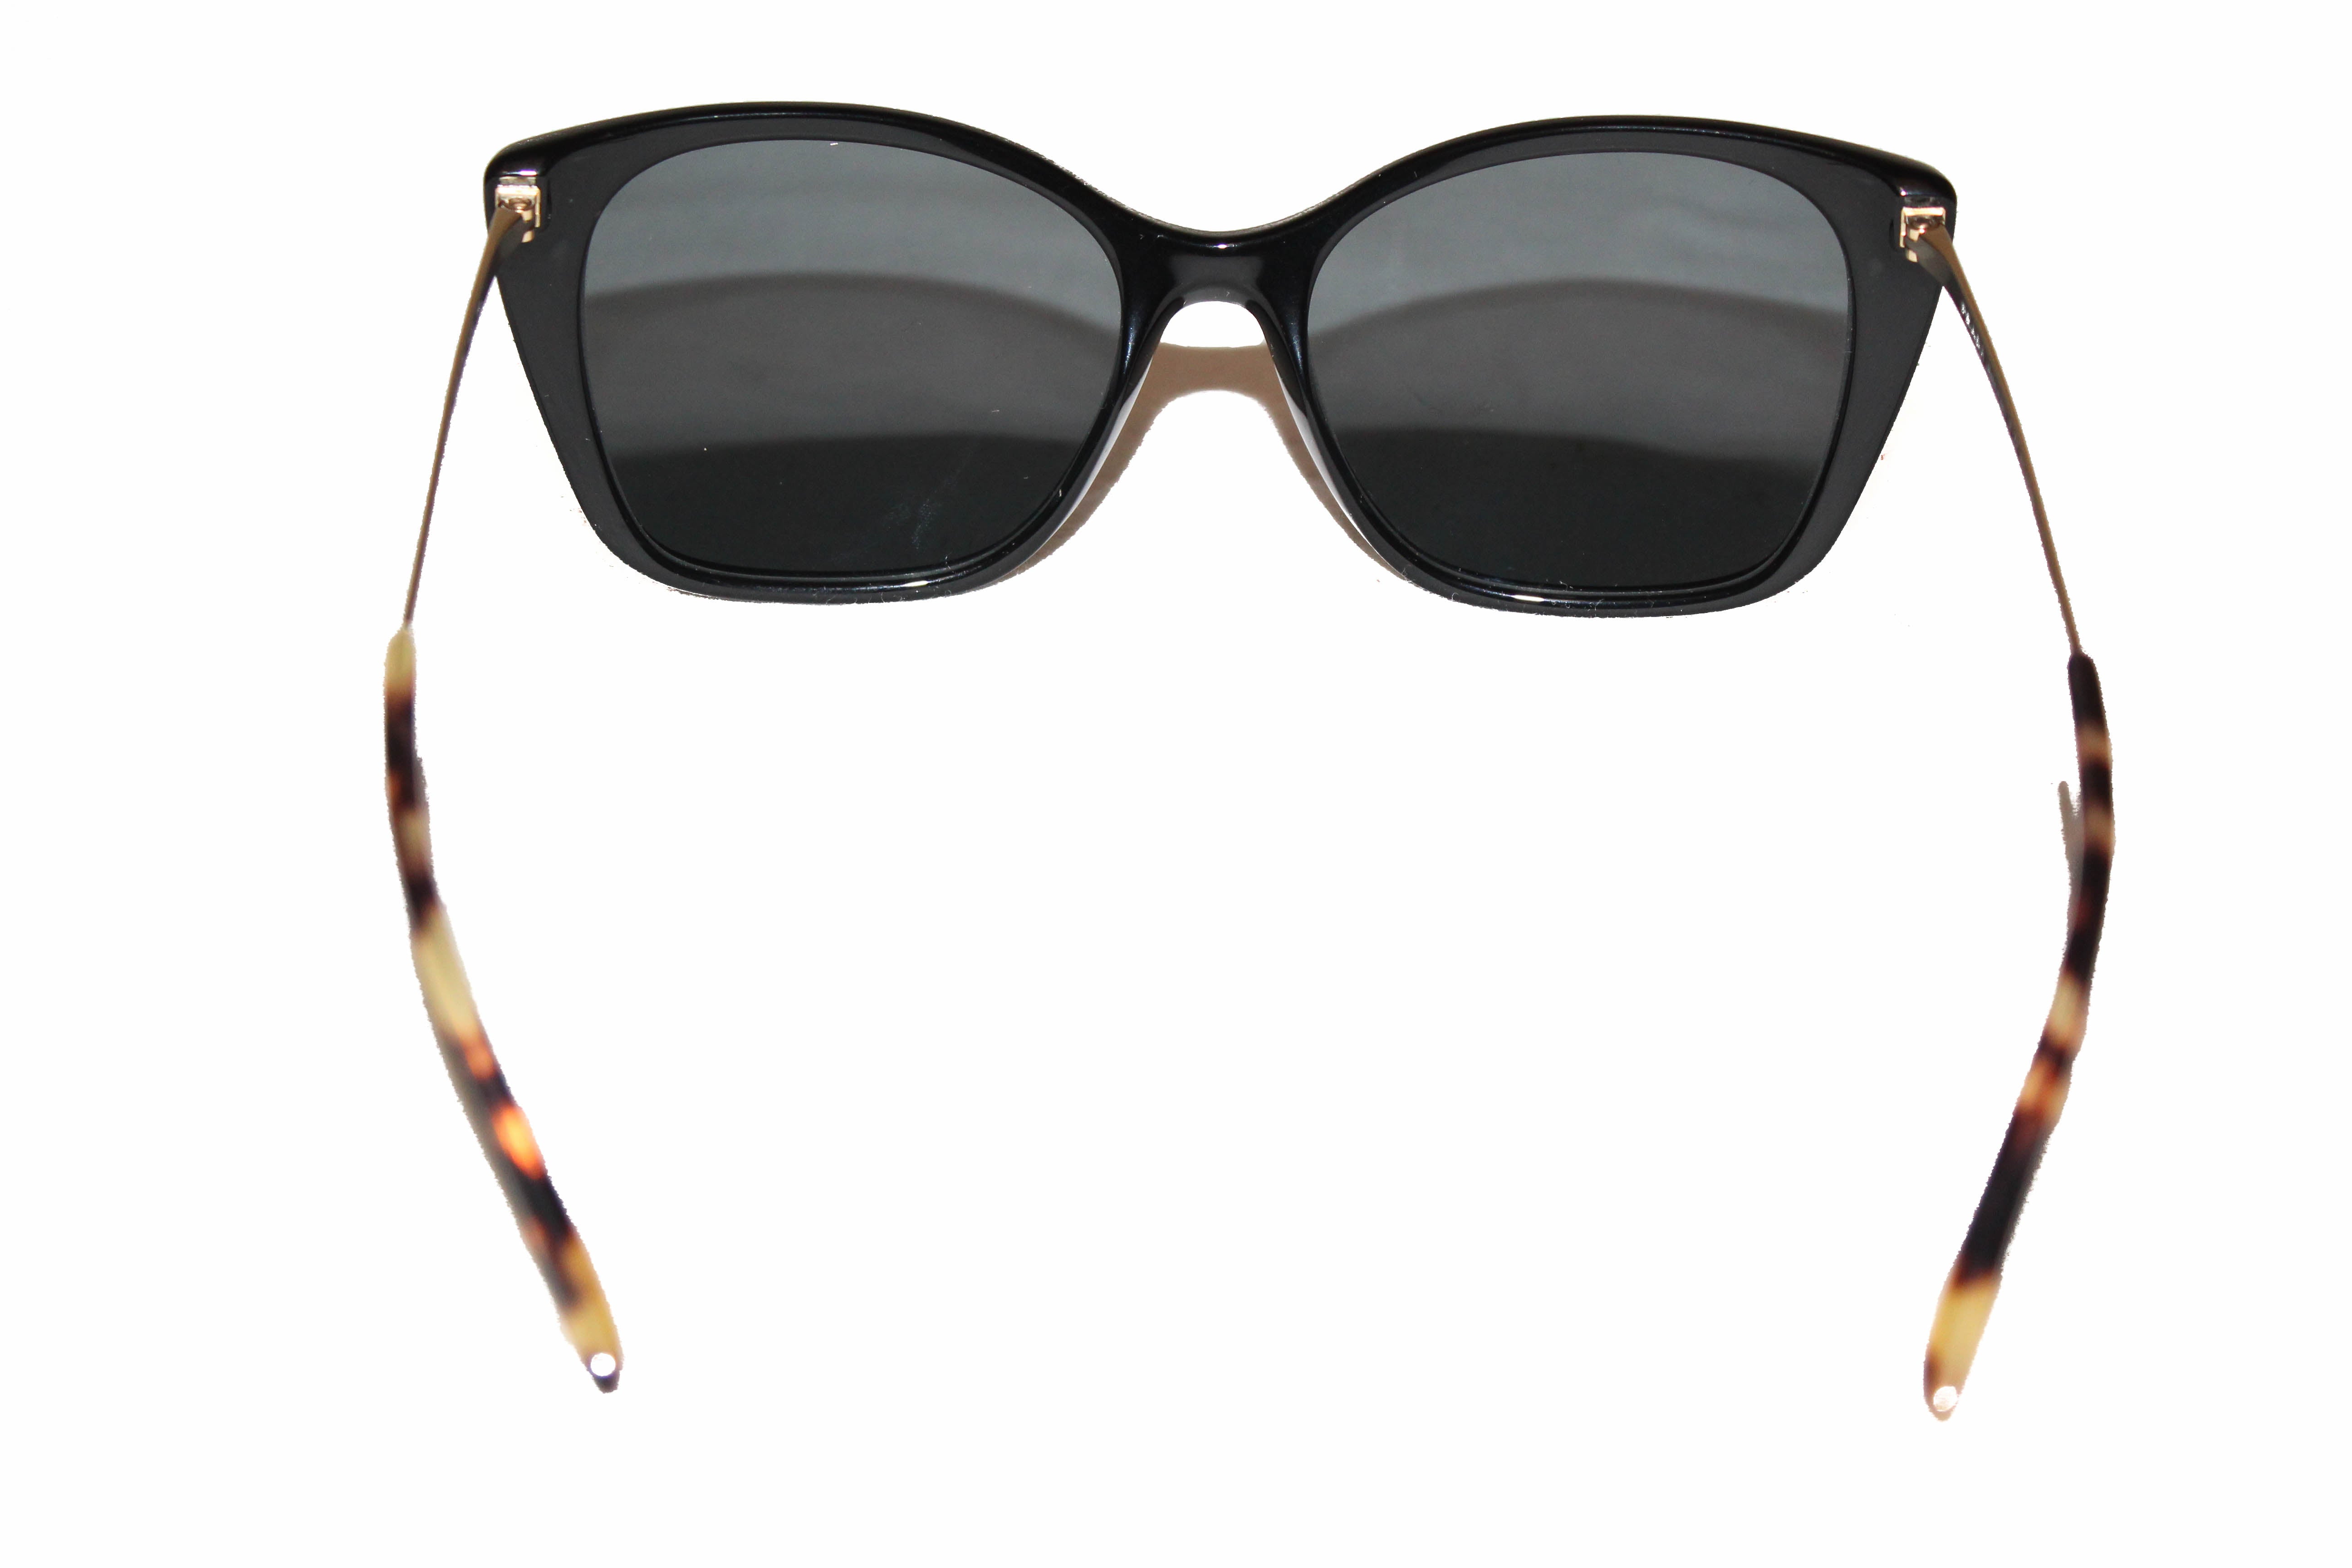 Authentic Prada Black/Grey Polarized Sunglasses SPR12x